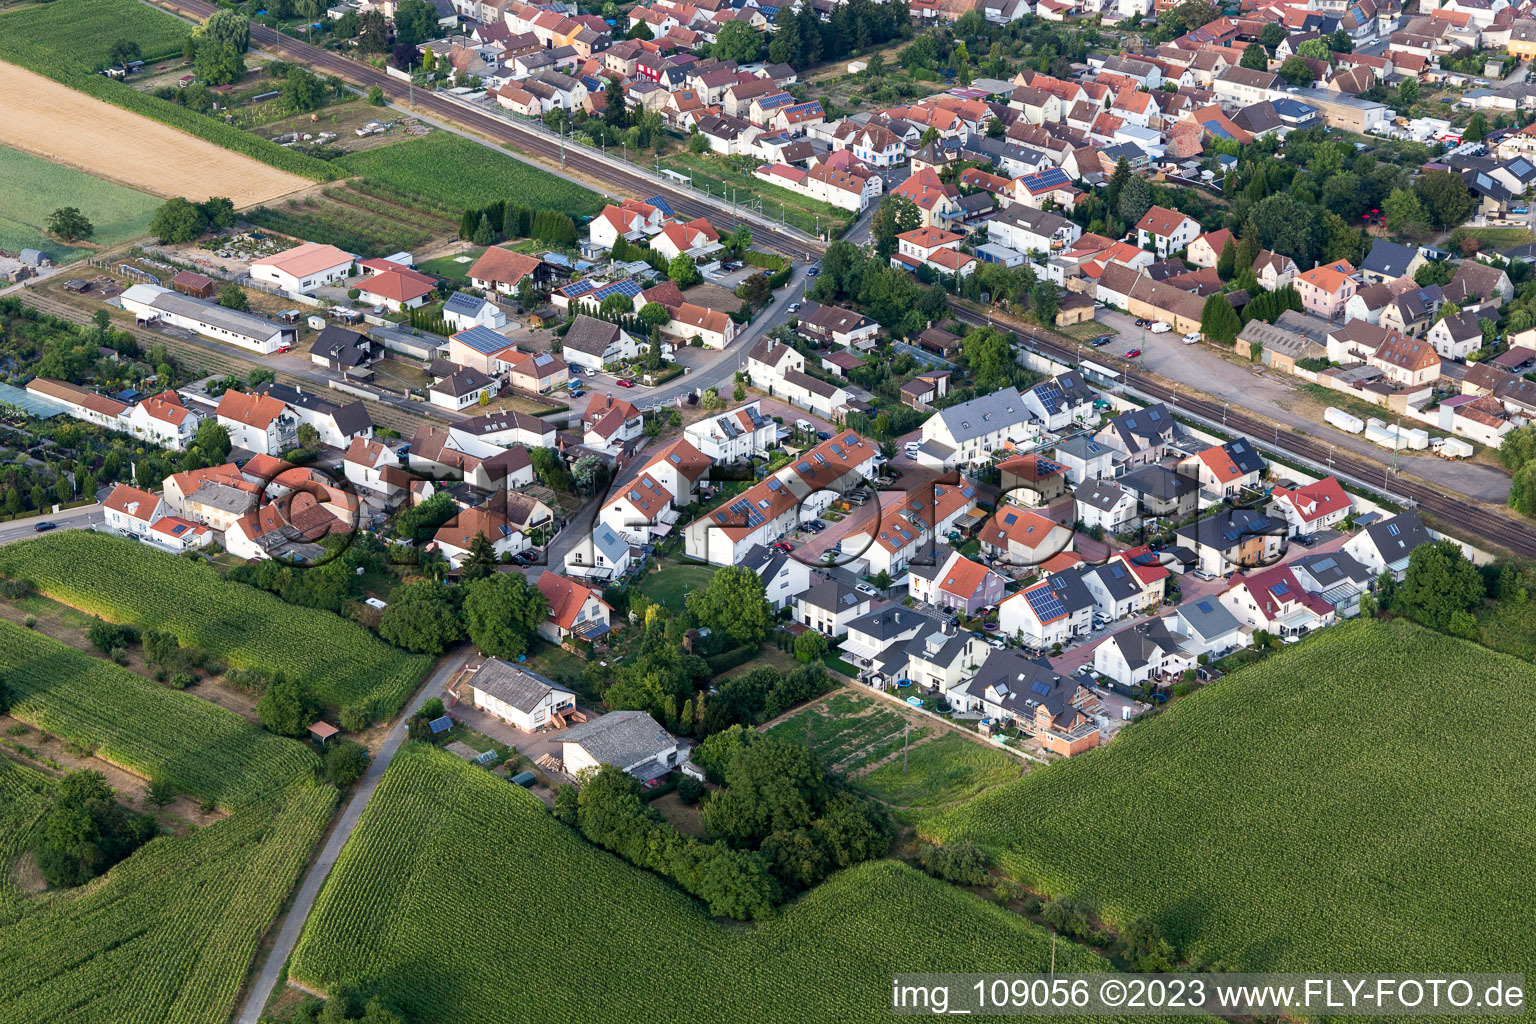 Ortsteil Berghausen in Römerberg im Bundesland Rheinland-Pfalz, Deutschland aus der Luft betrachtet